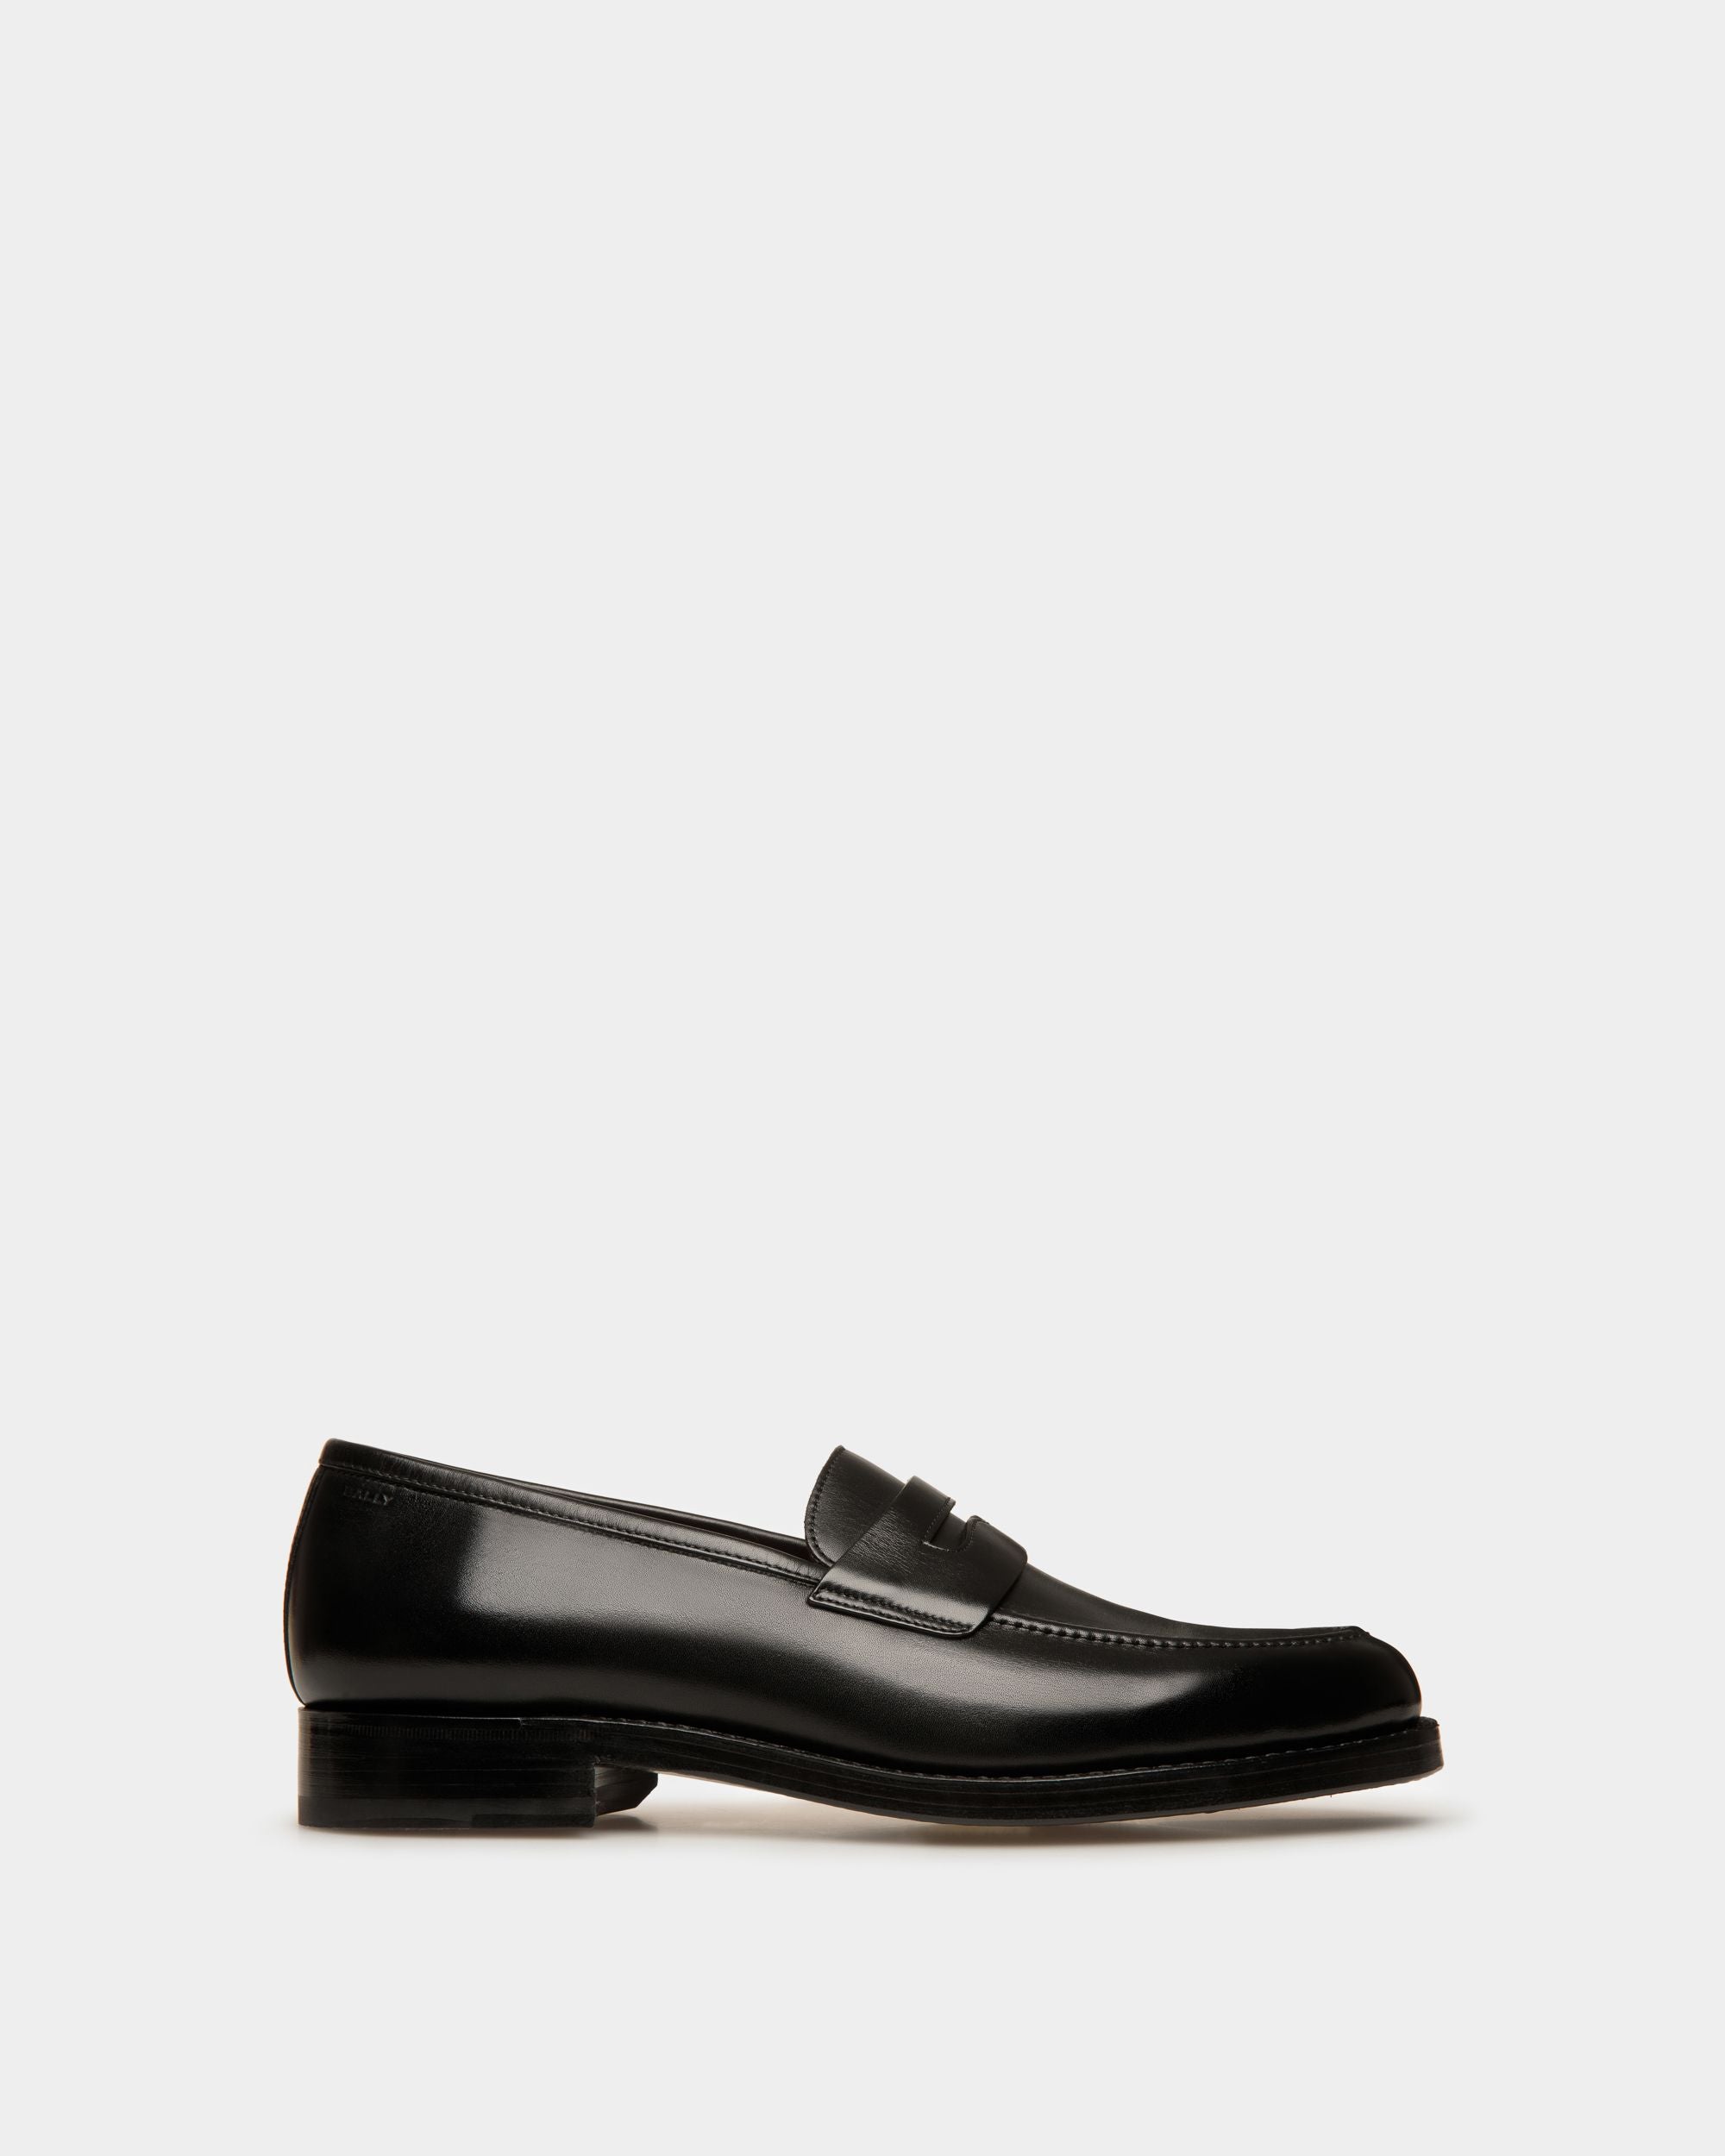 Schoenen | Men's Loafer in Black Leather | Bally | Still Life Side